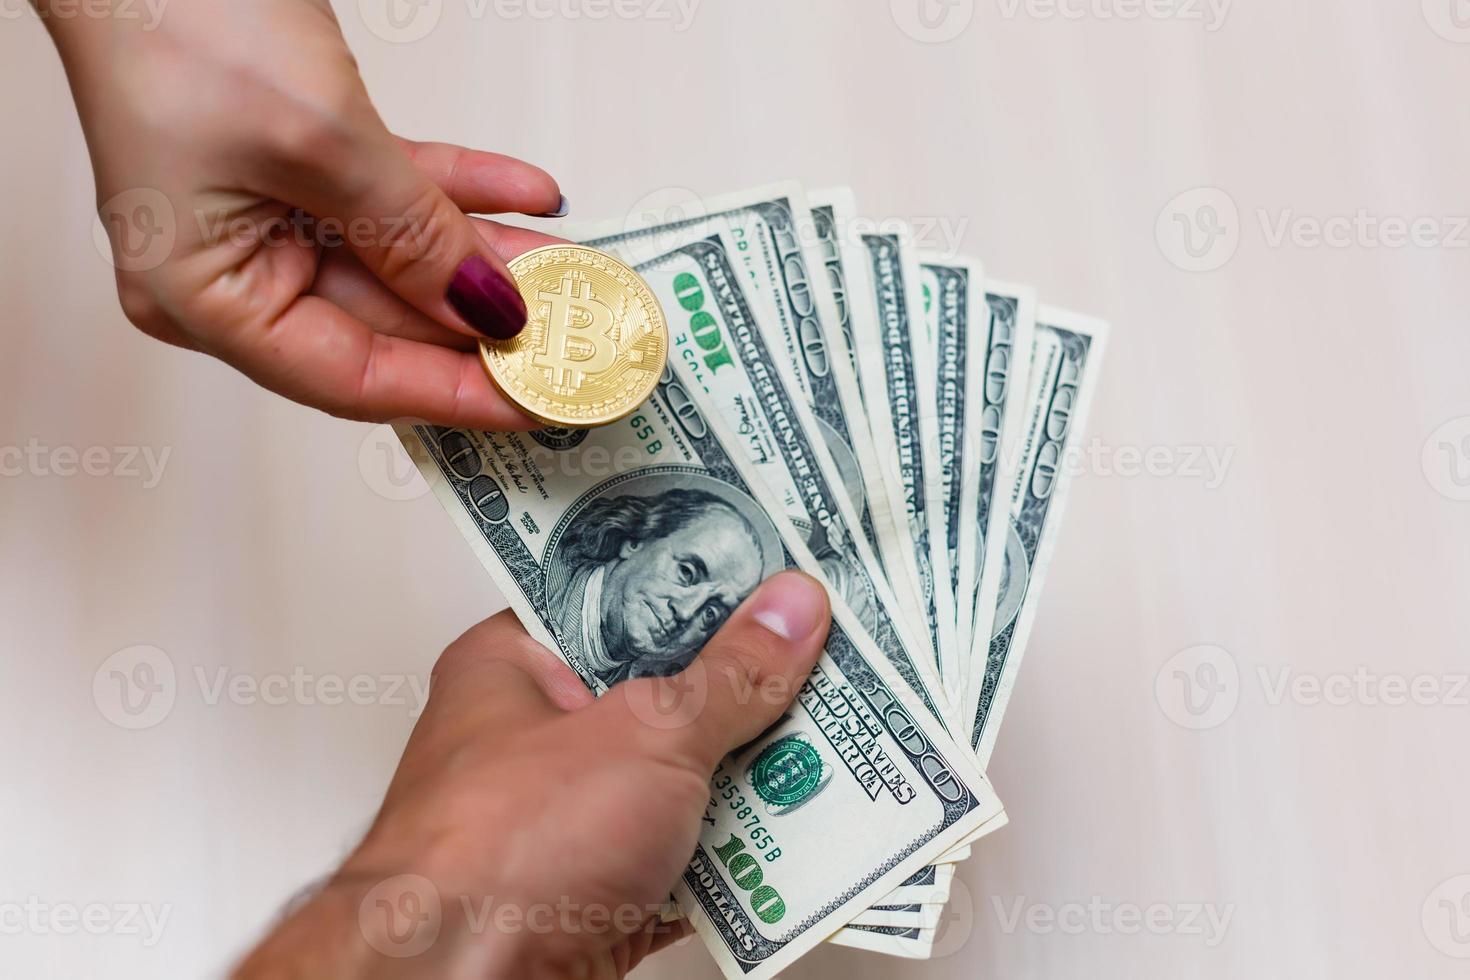 gyllene bitcoins på oss dollar i de händer elektronisk pengar utbyta begrepp foto